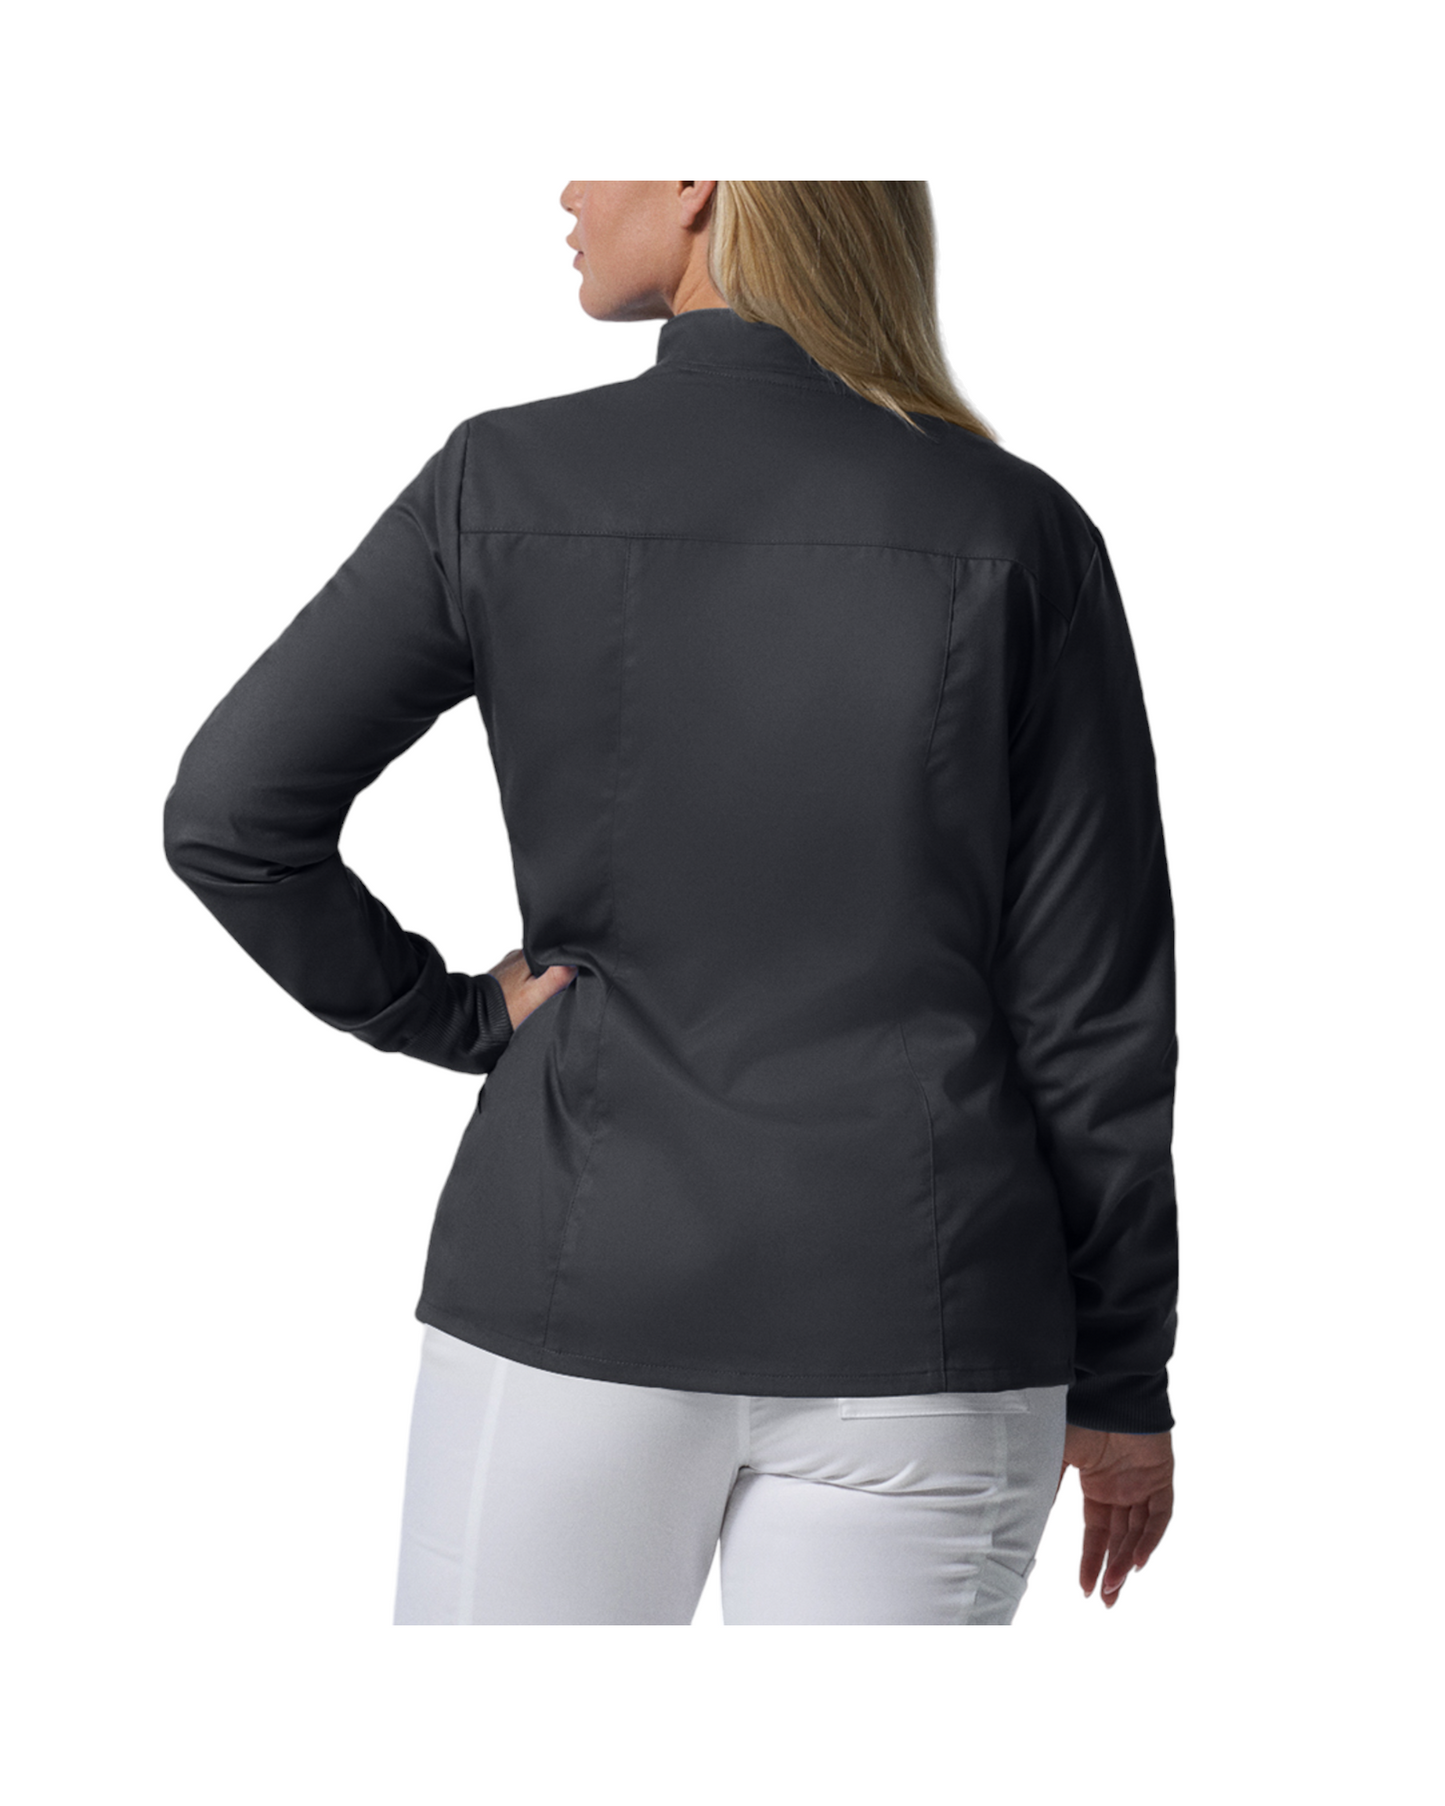 Vue du dos de la veste de survêtement pour femmes Landau Proflex #LJ701-OS